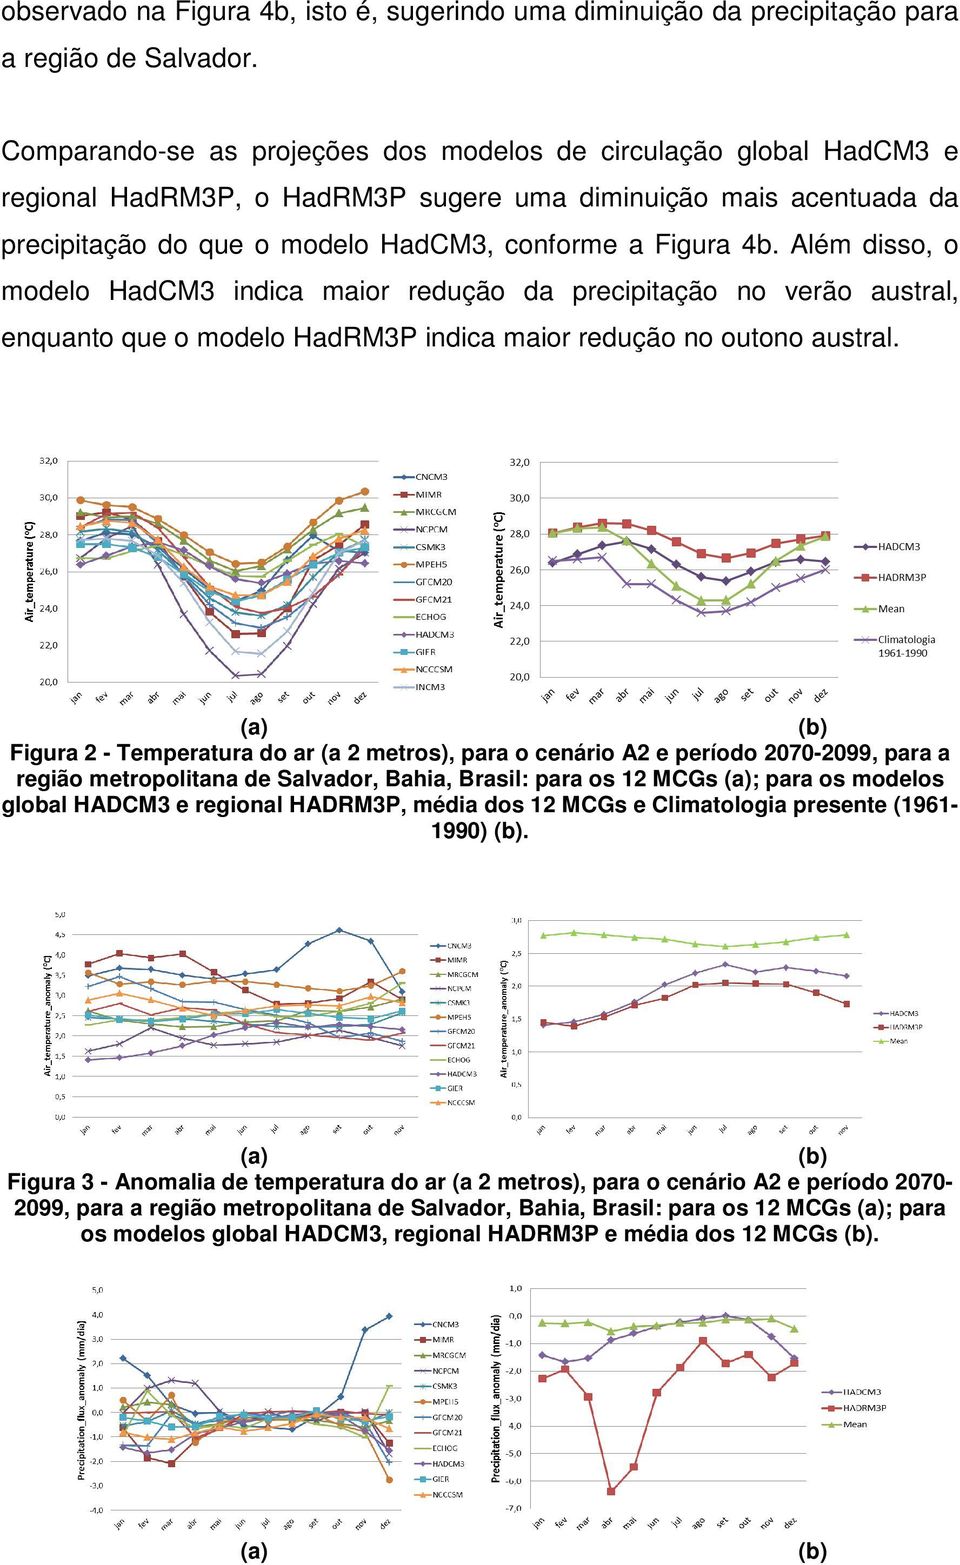 Além disso, o modelo HadCM3 indica maior redução da precipitação no verão austral, enquanto que o modelo HadRM3P indica maior redução no outono austral.